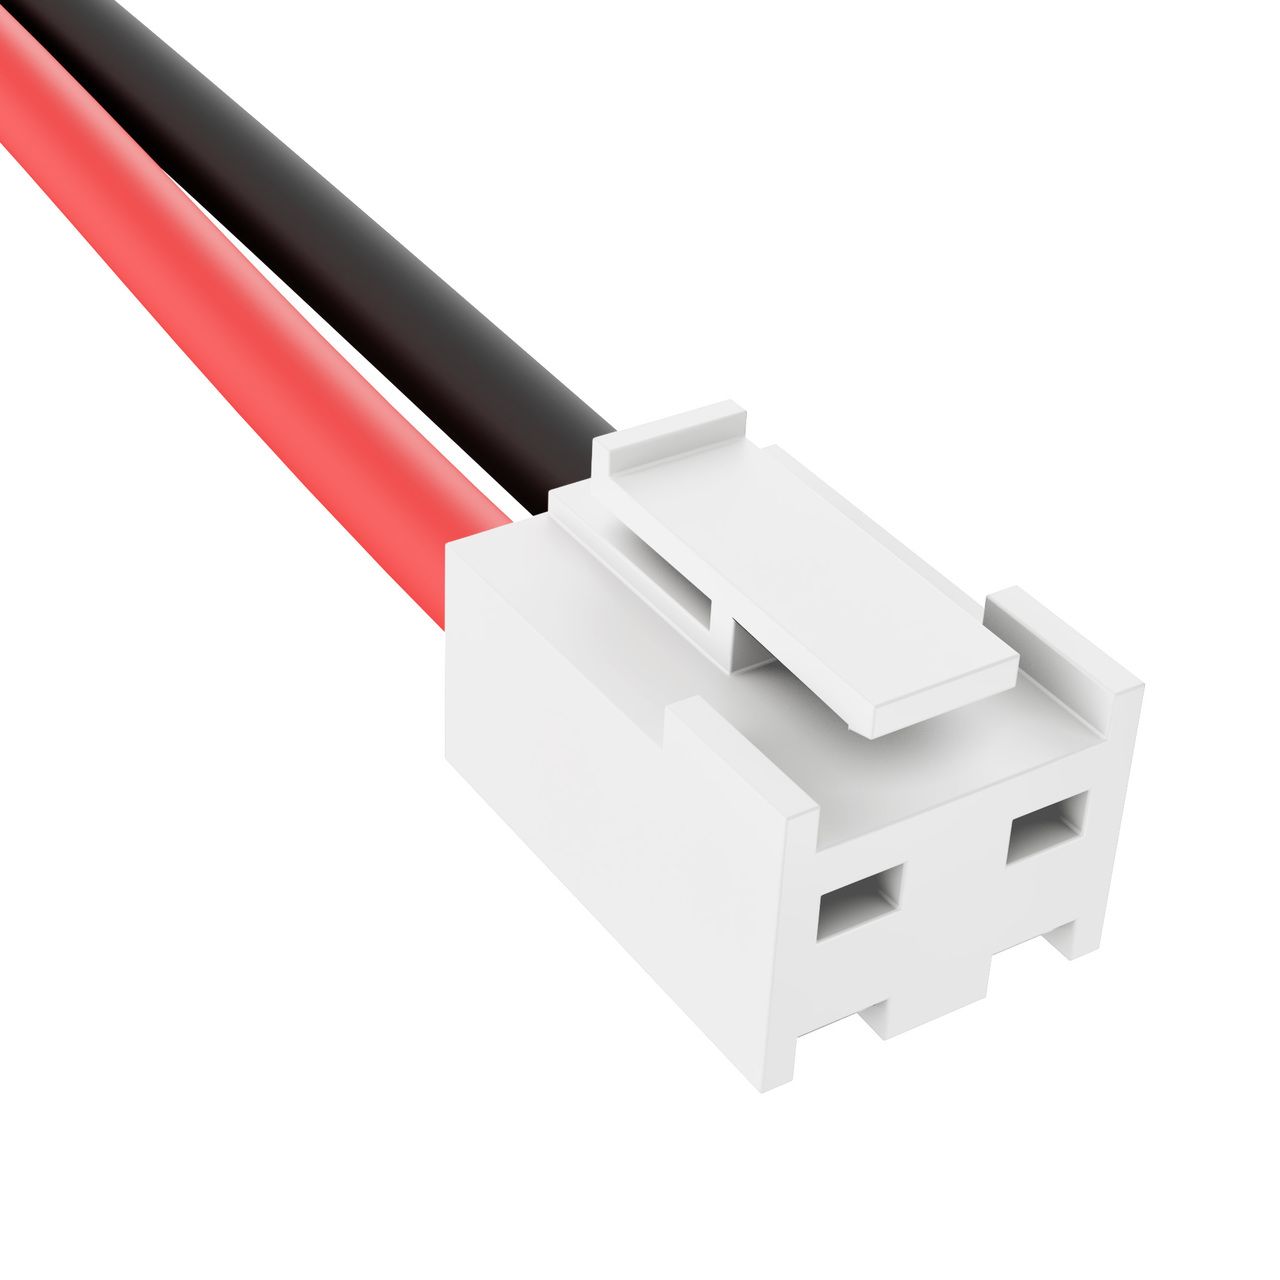 Connector JST-VH met clip slot 3.96mm pitch 2-pin female met 10cm kabel 22AWG zwart=links / rood=rechts